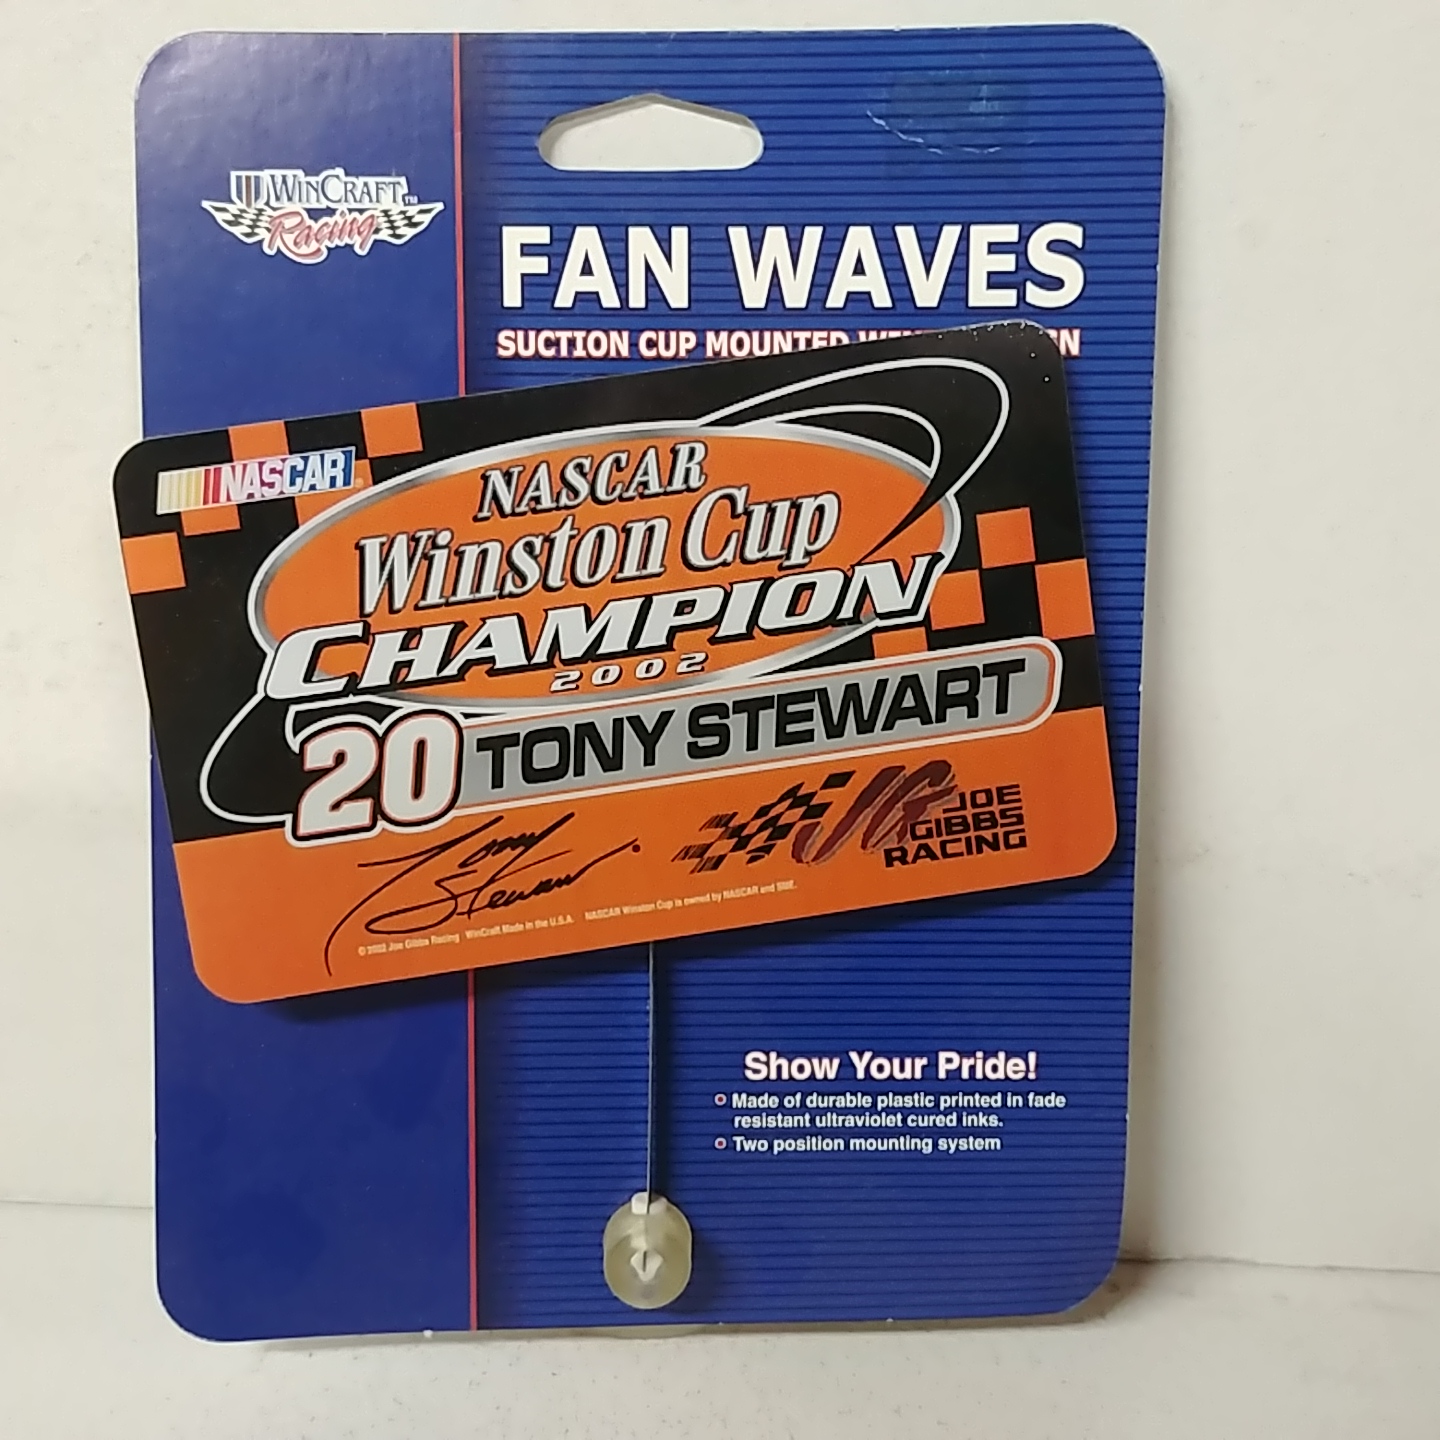 2002 Tony Stewart Home Depot "Winston Cup Champion" Fan Wave